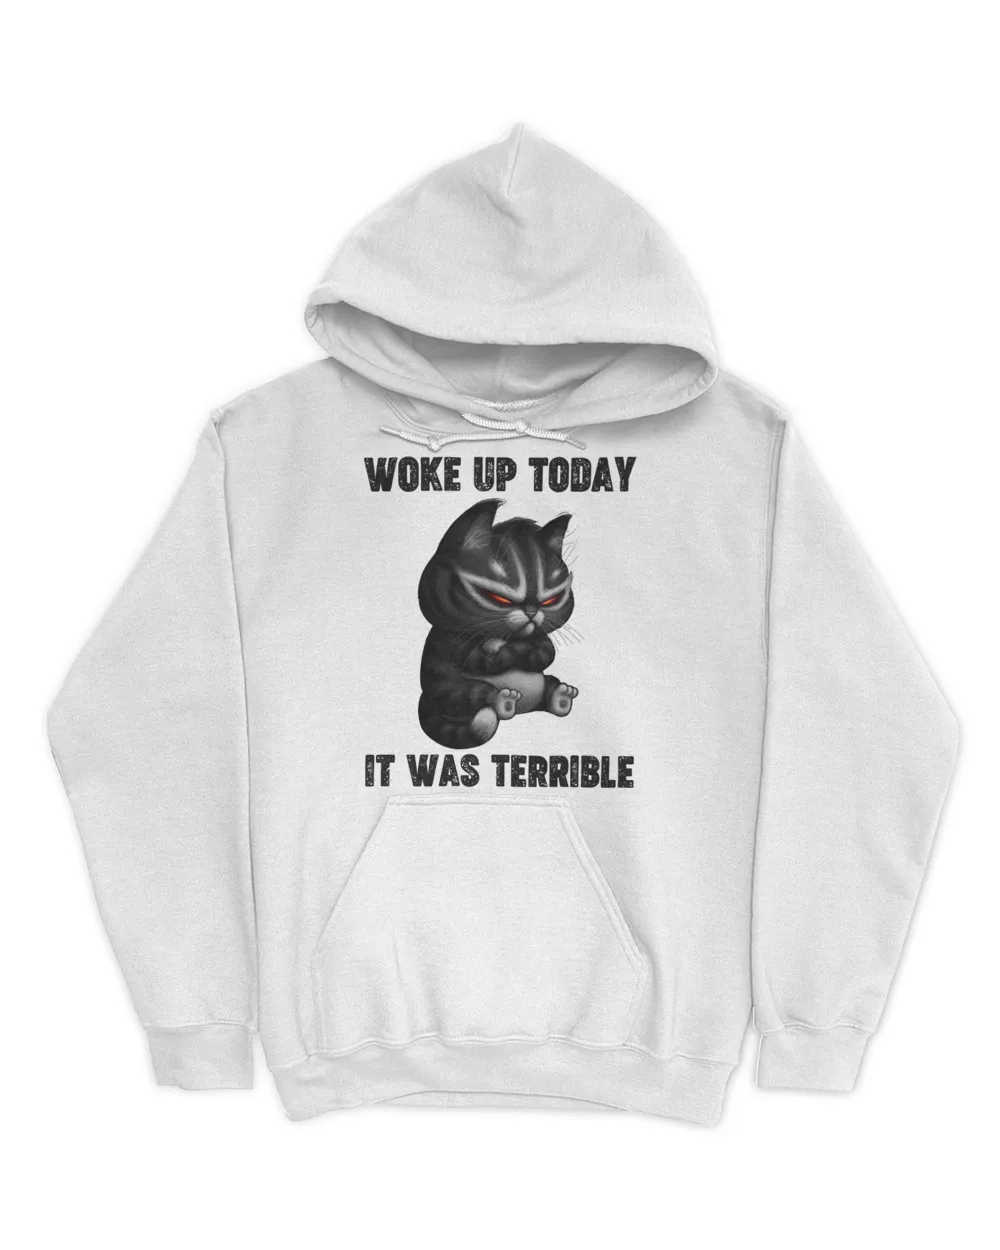 Woke Up Today - It Was Terrible